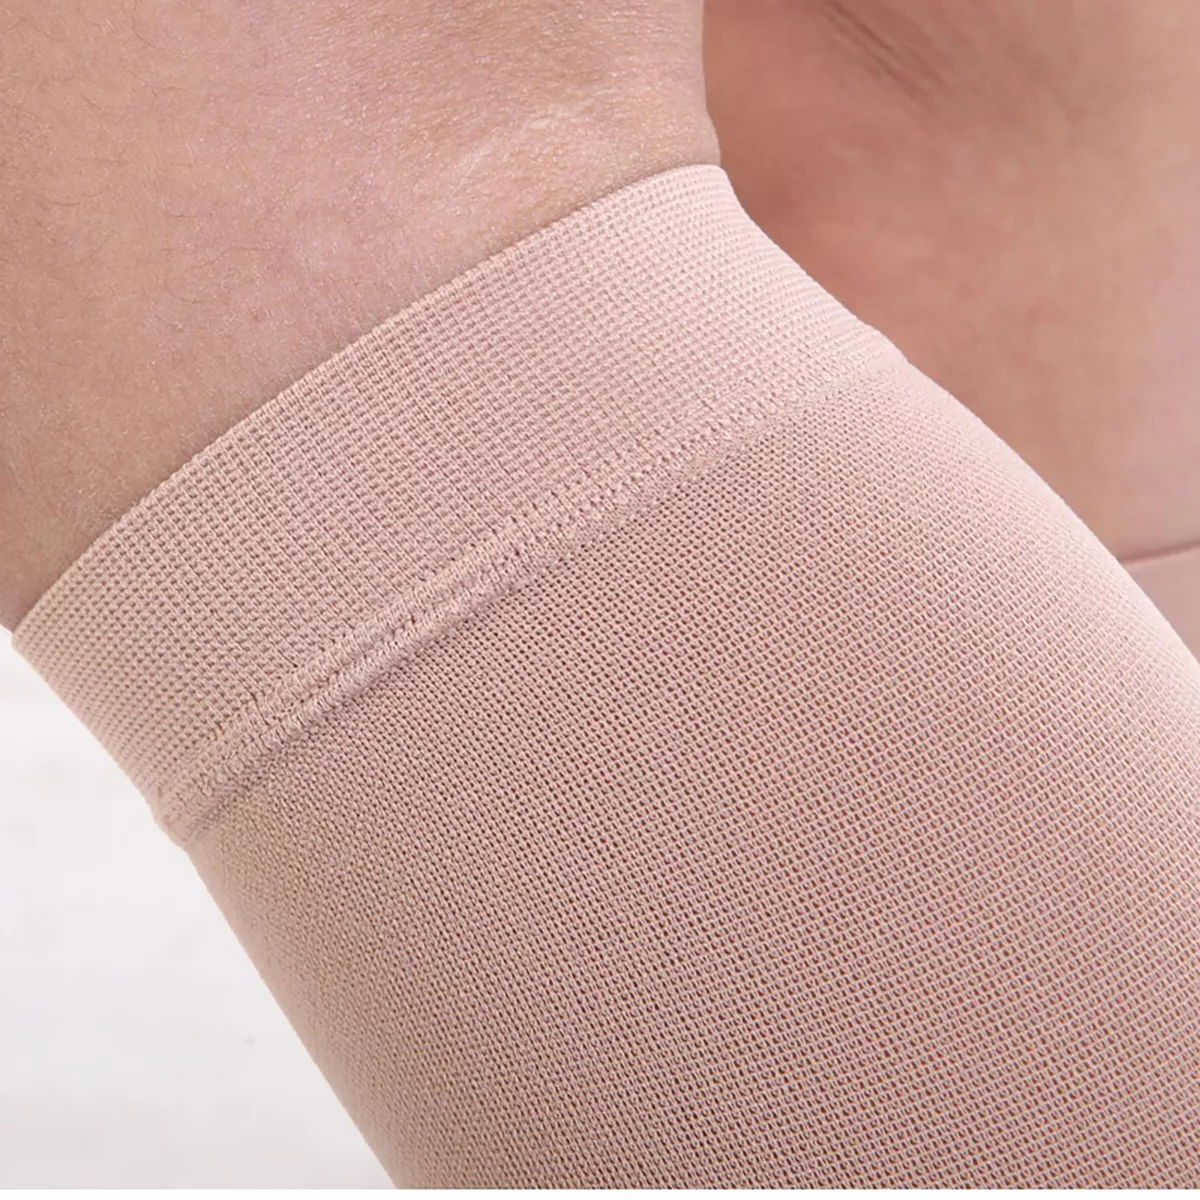 Varcoh ® 20-30 mmHg Men Calf Sleeve Compression Socks Beige